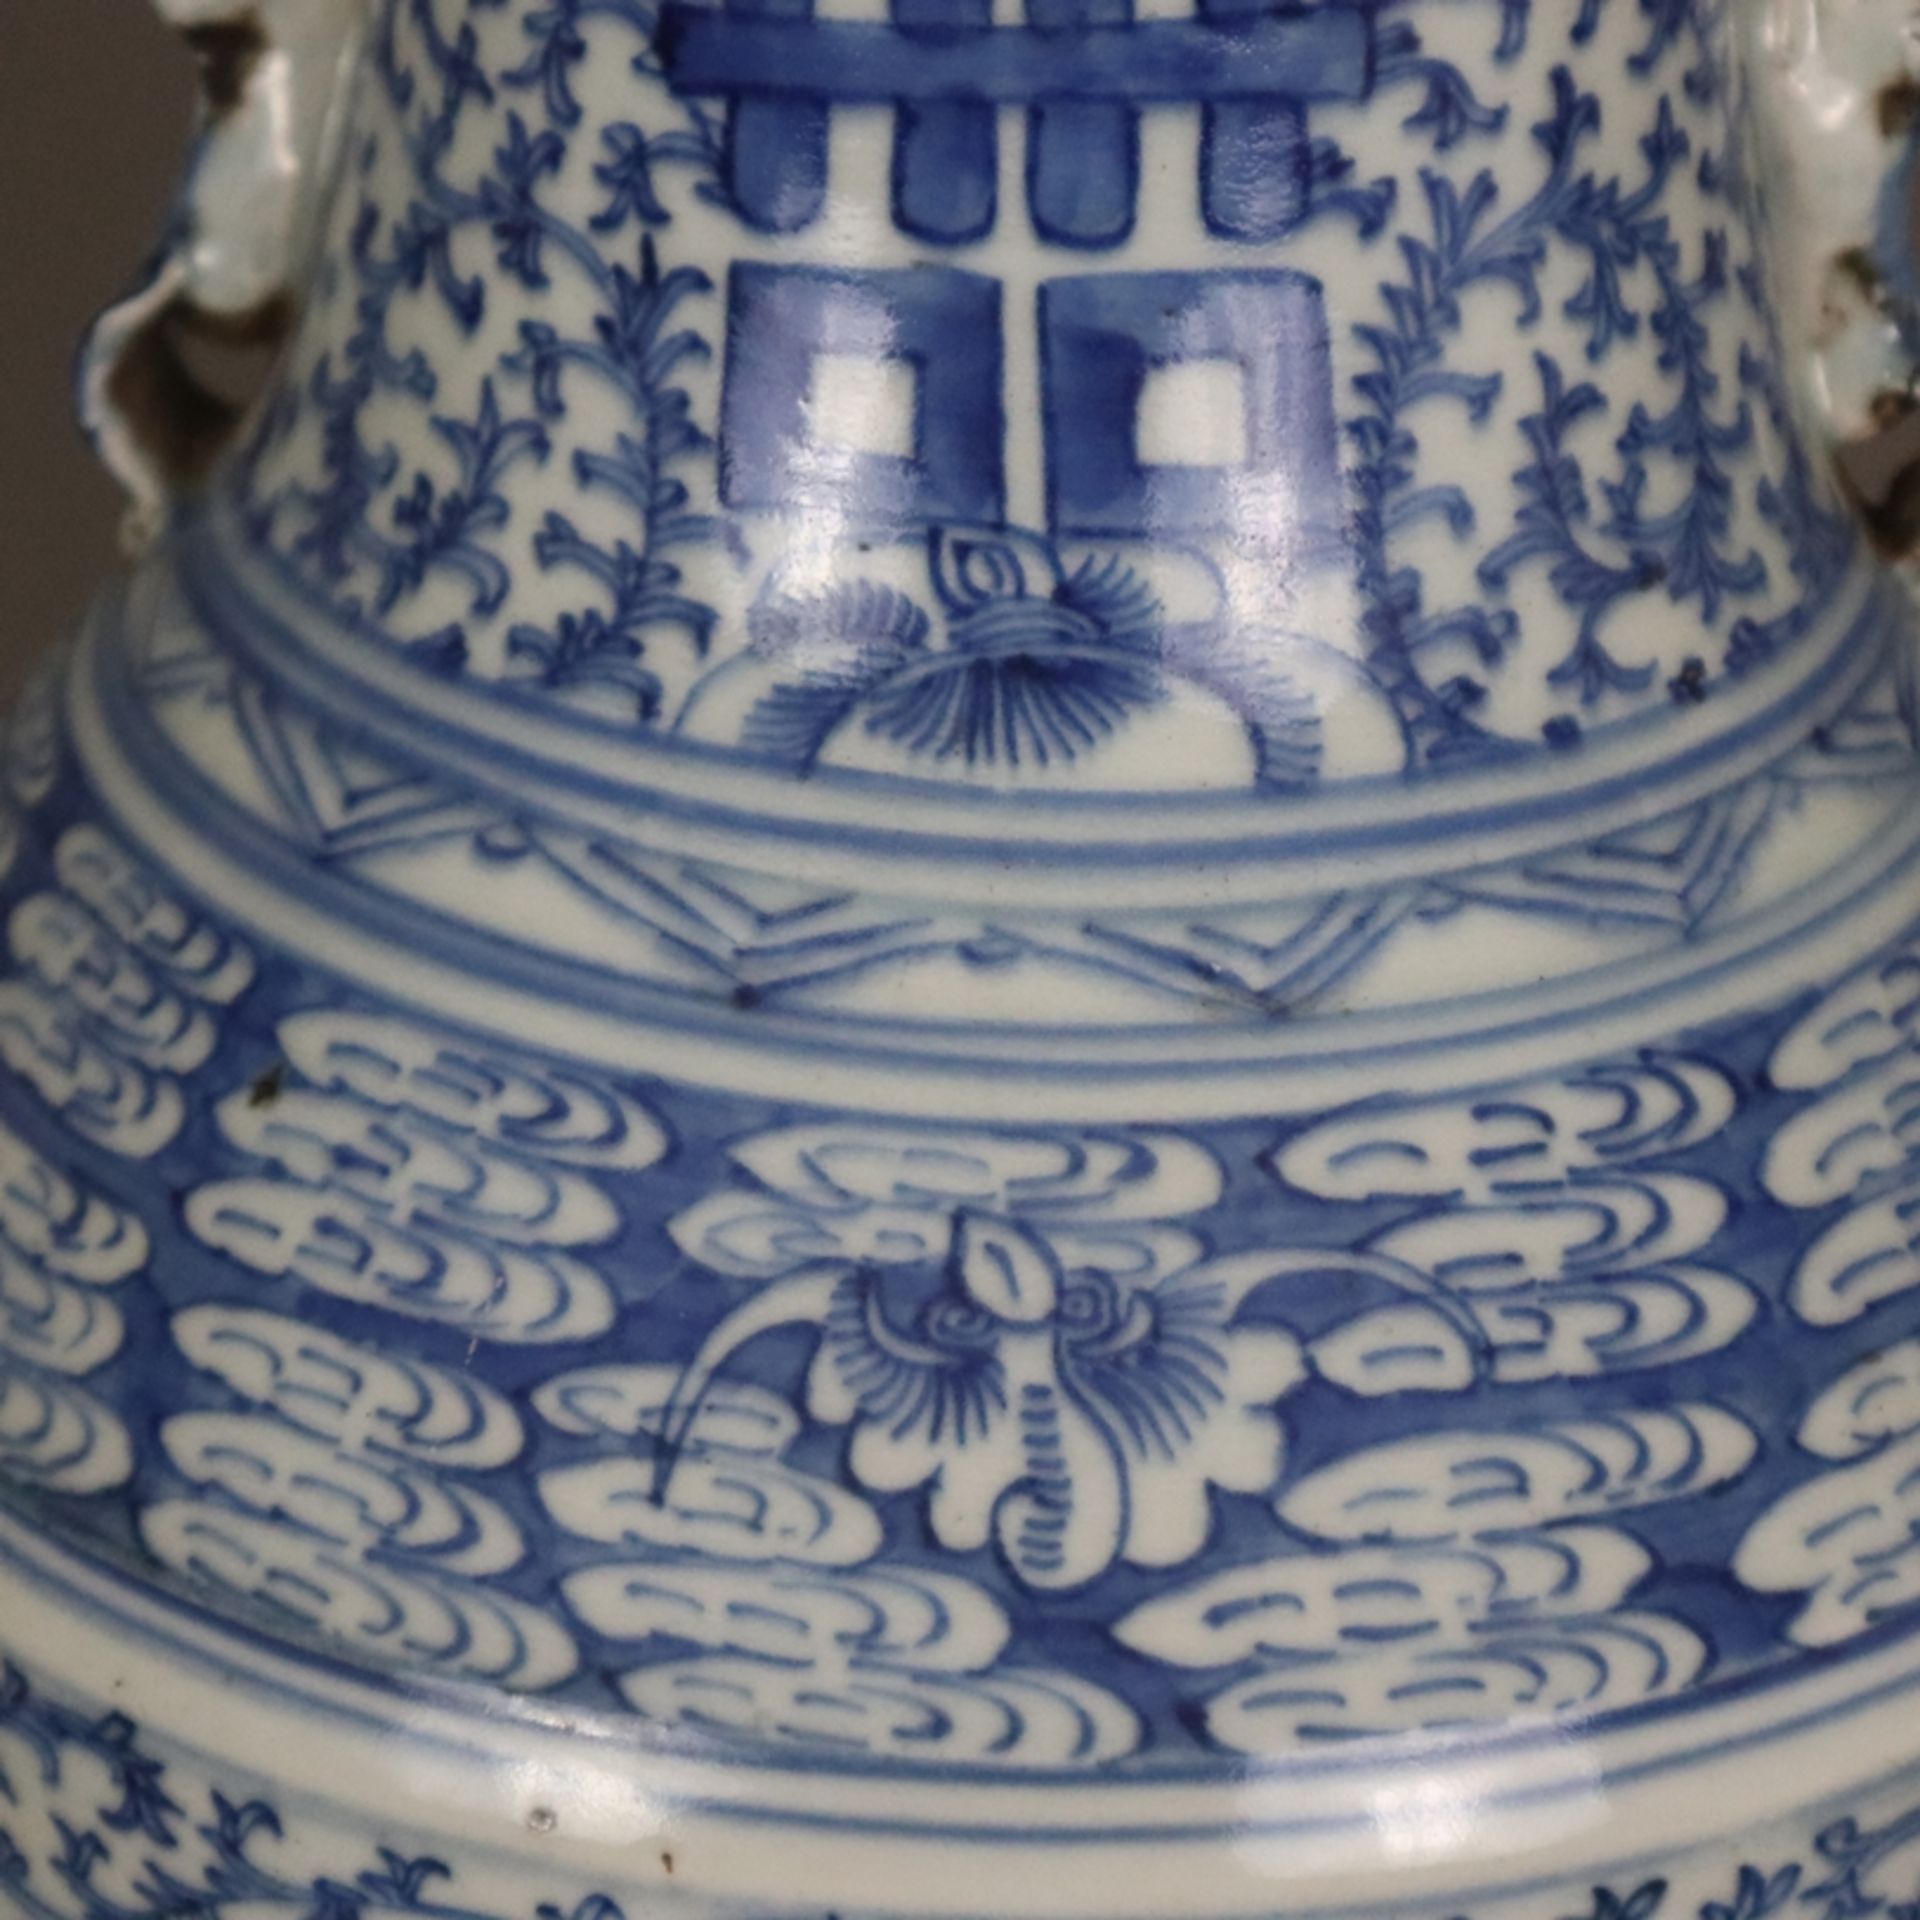 Blau-weiße Bodenvase - China, späte Qing-Dynastie, Tongzhi 1862-1875, sog. „Hochzeitsvase“, auf der - Bild 4 aus 14